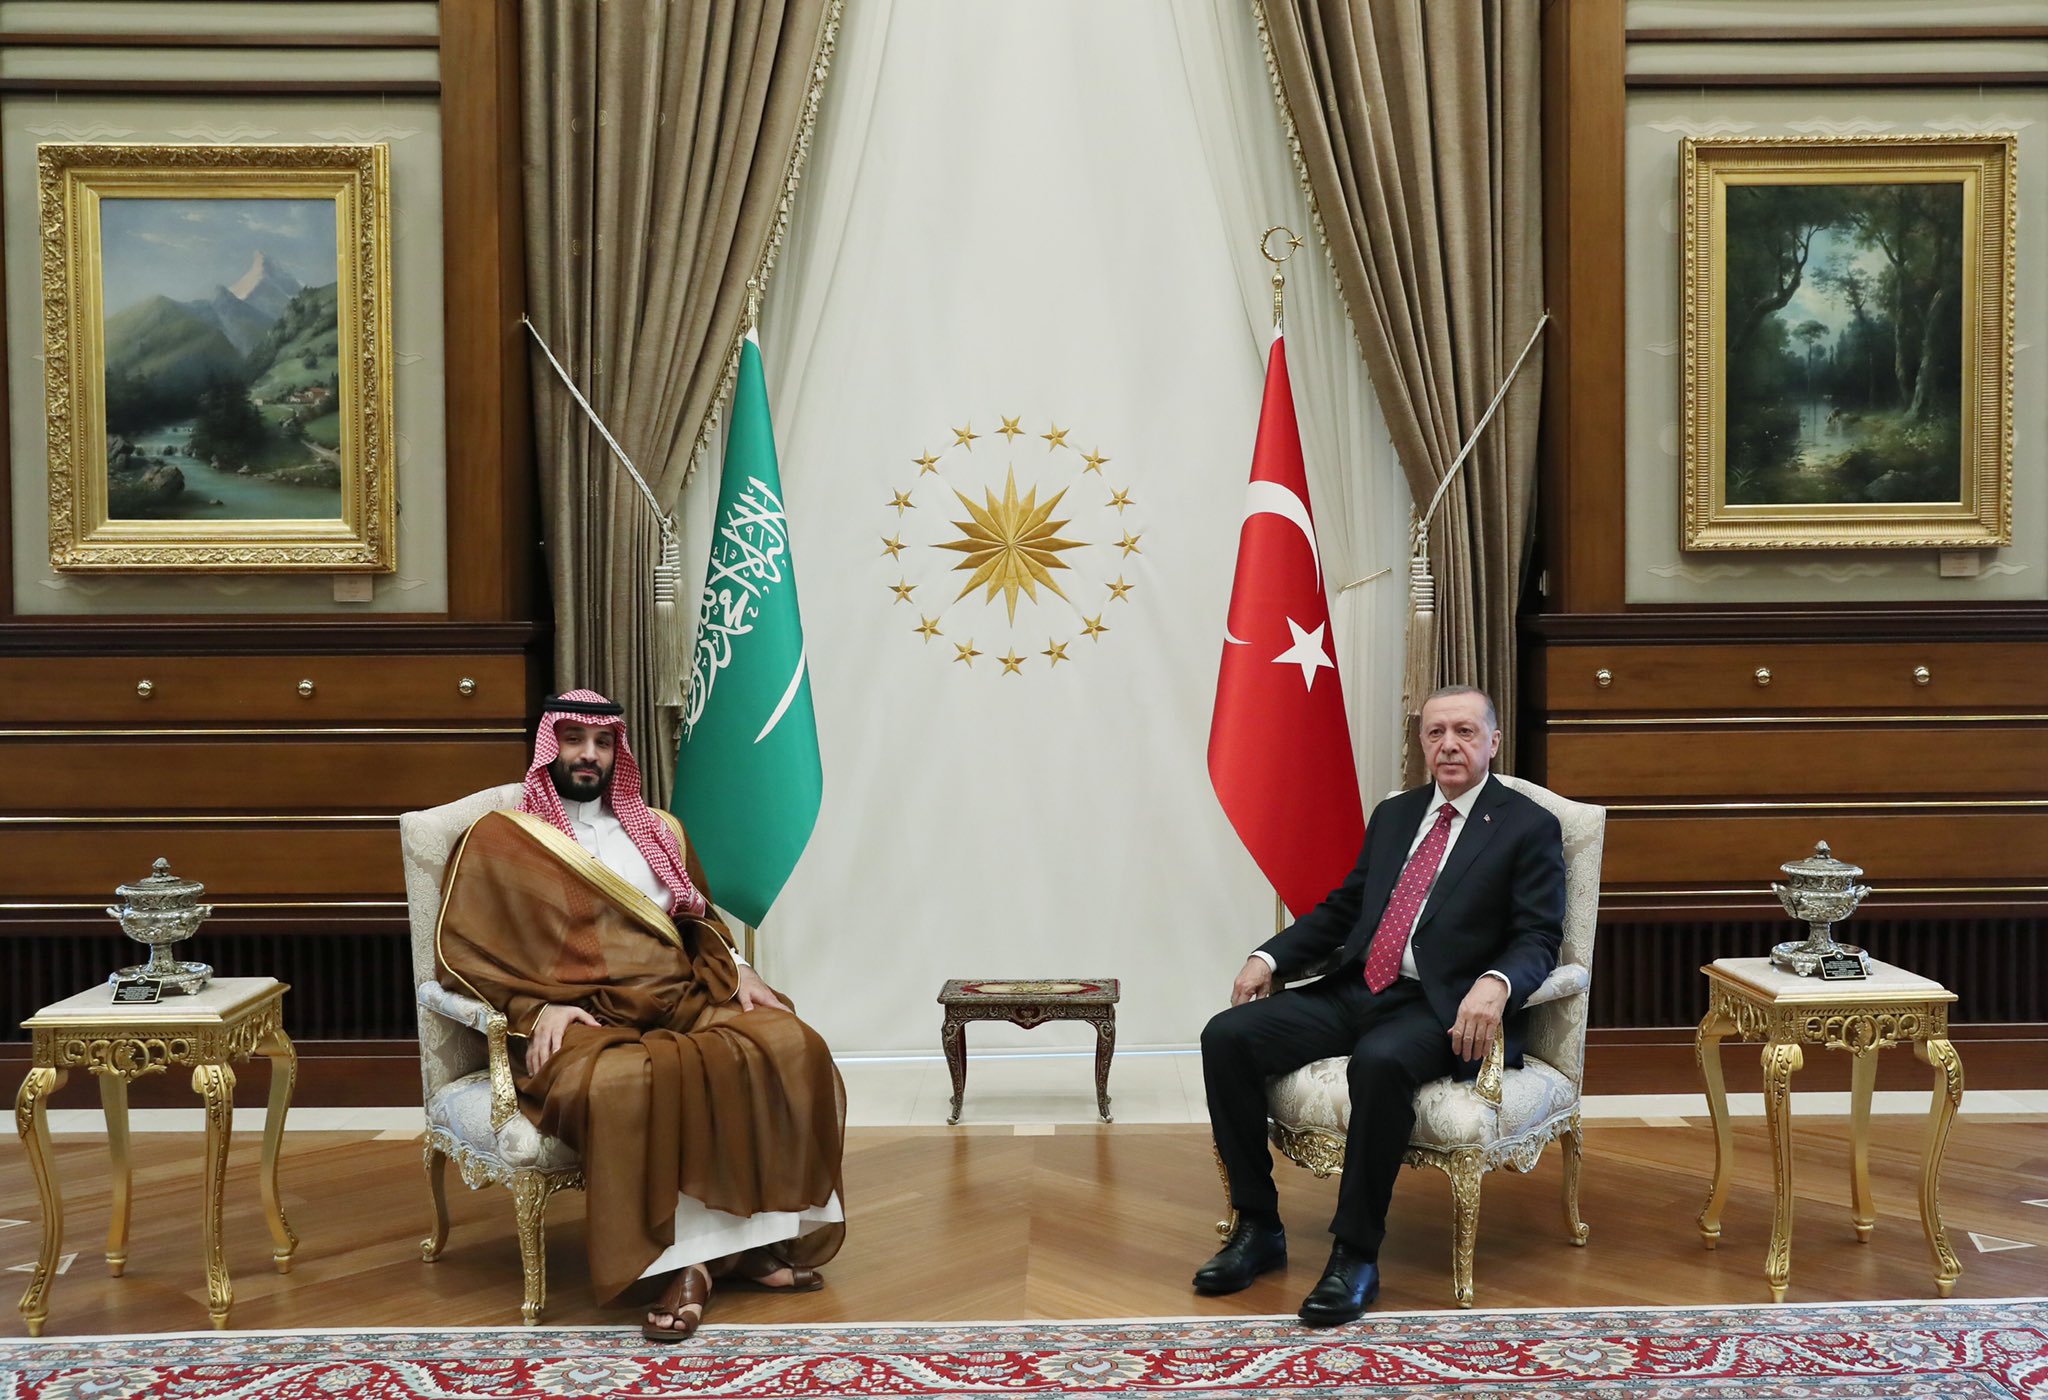 Türkiye’ye resmî ziyarette bulunan Suudi Arabistan Krallığı Veliaht Prensi Muhammed bin Selman bin Abdülaziz El Suud’u resmî törenle karşıladı.